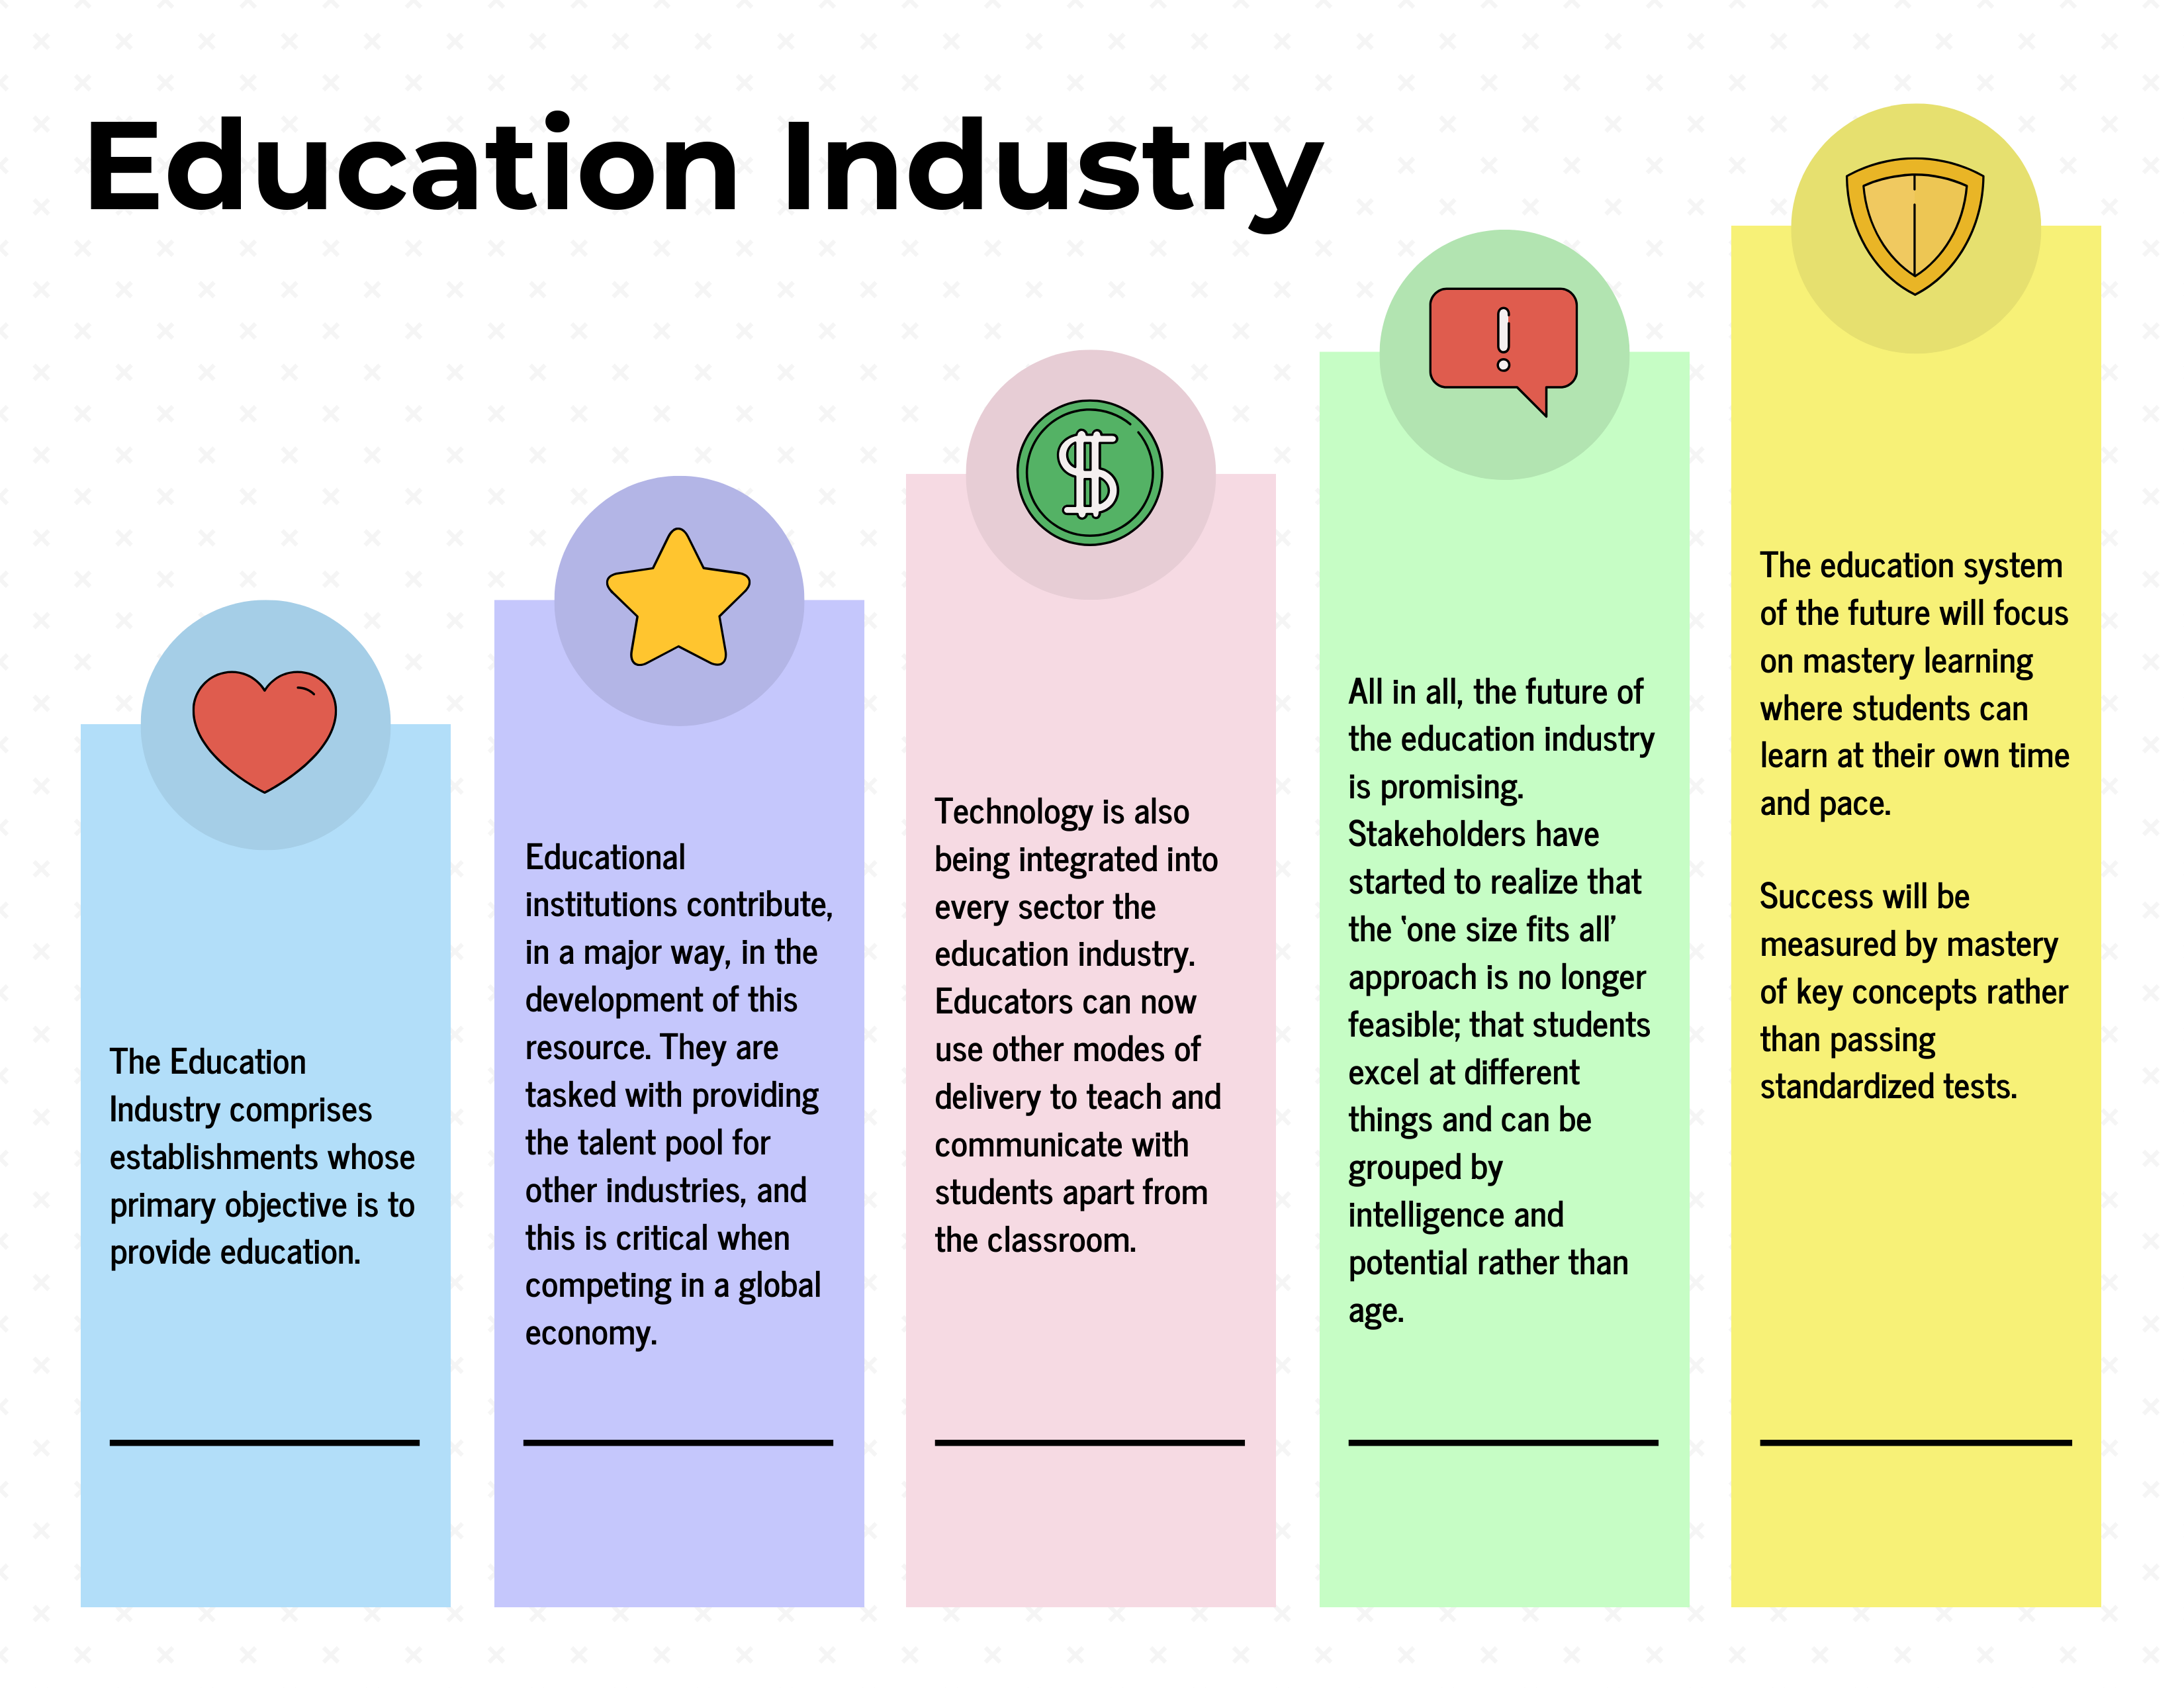 case studies in education industry